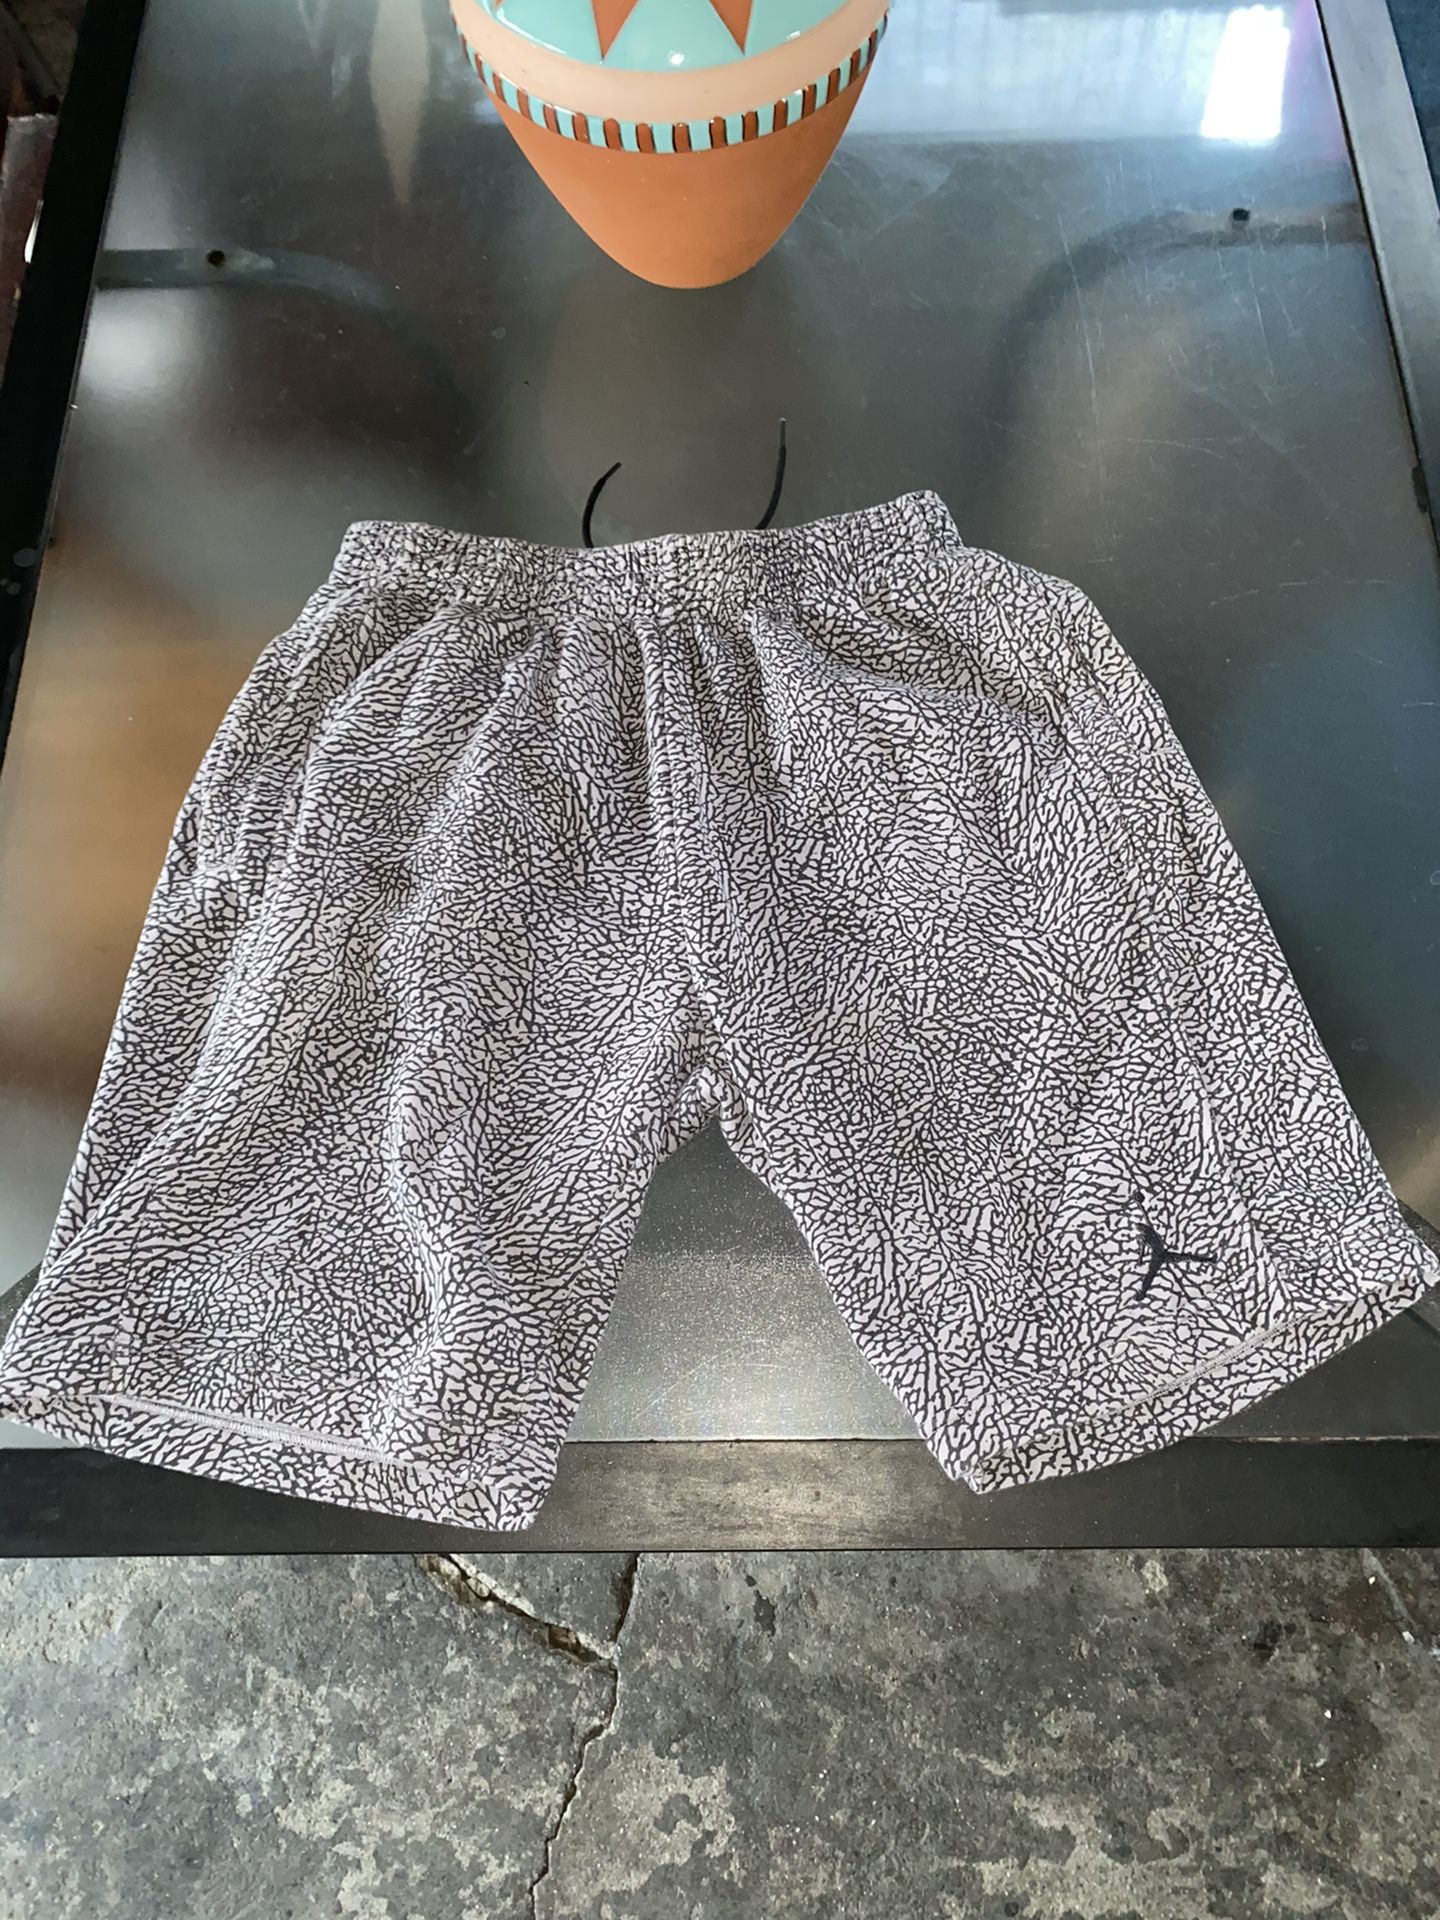 Jordan 3 Elephant Print Cement Fleece Shorts